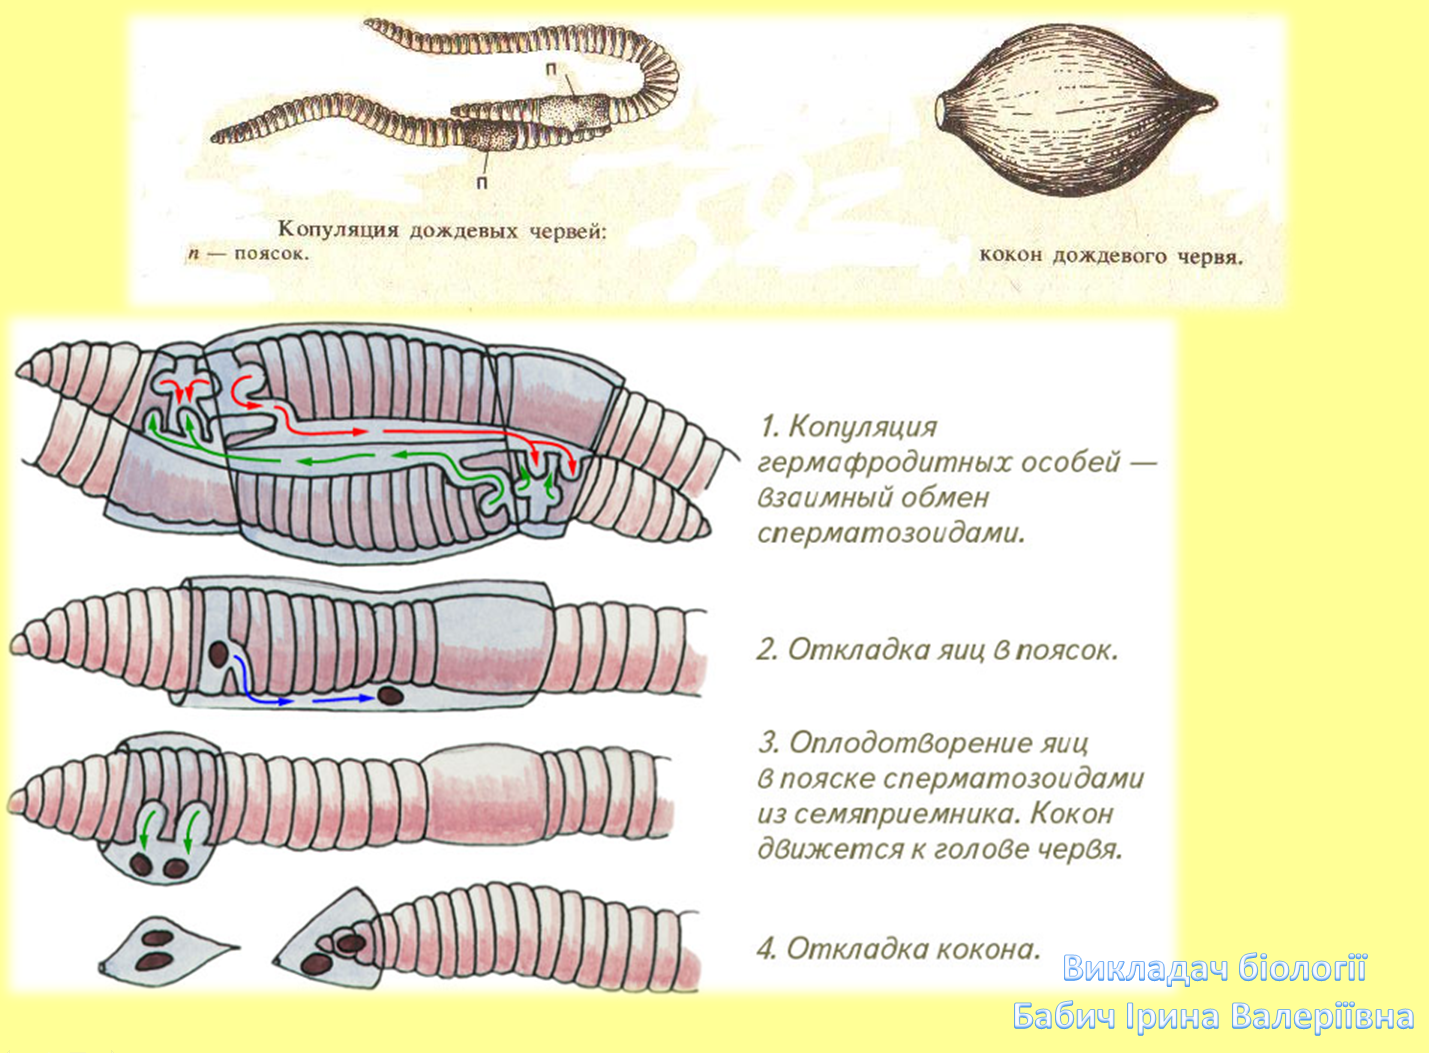 Кокон червя. Параподии у малощетинковых червей. Откладывание кокона кольчатых червей. Половая система дождевого червя. Схема размножения кольчатых червей.